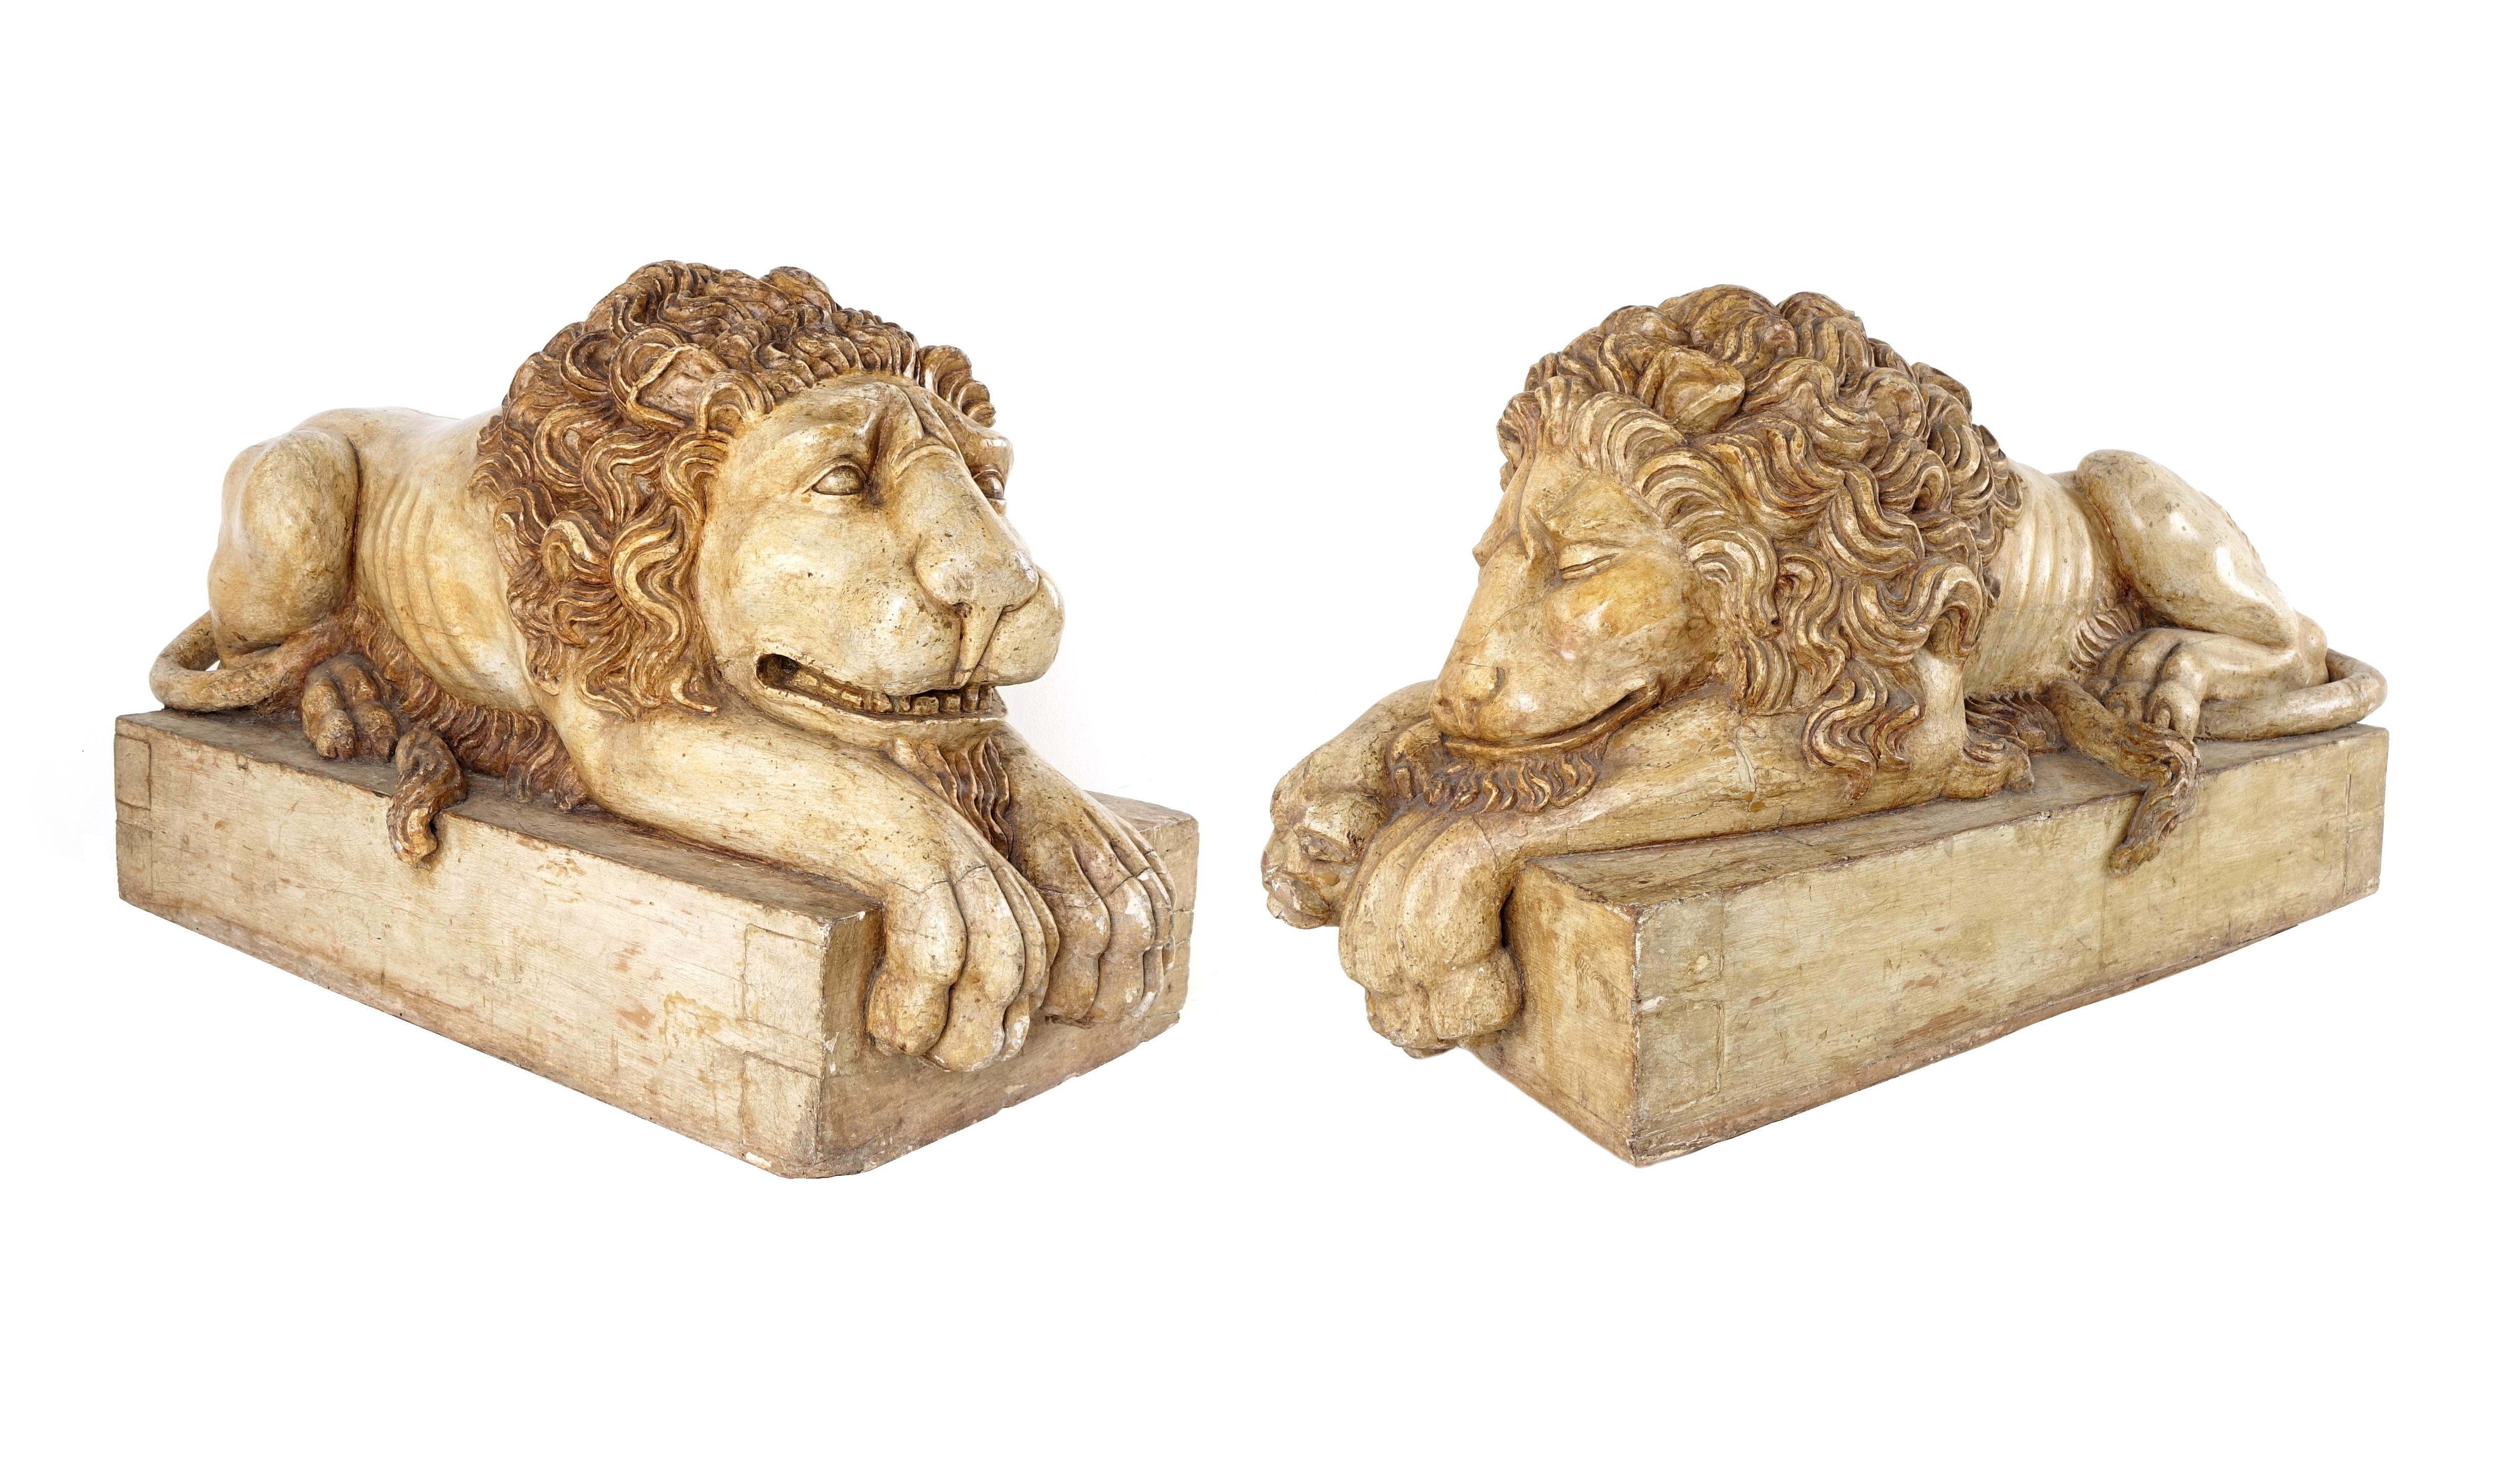 Paar Skulpturen, die schlafende Löwen darstellen.
Das Modell ist eine Erfindung von Canova.
Die Legende besagt, dass Canova 1767 im Alter von 10 Jahren einen Löwen mit Butter für eine Torte herstellte, einen geflügelten Löwen, der einen großen